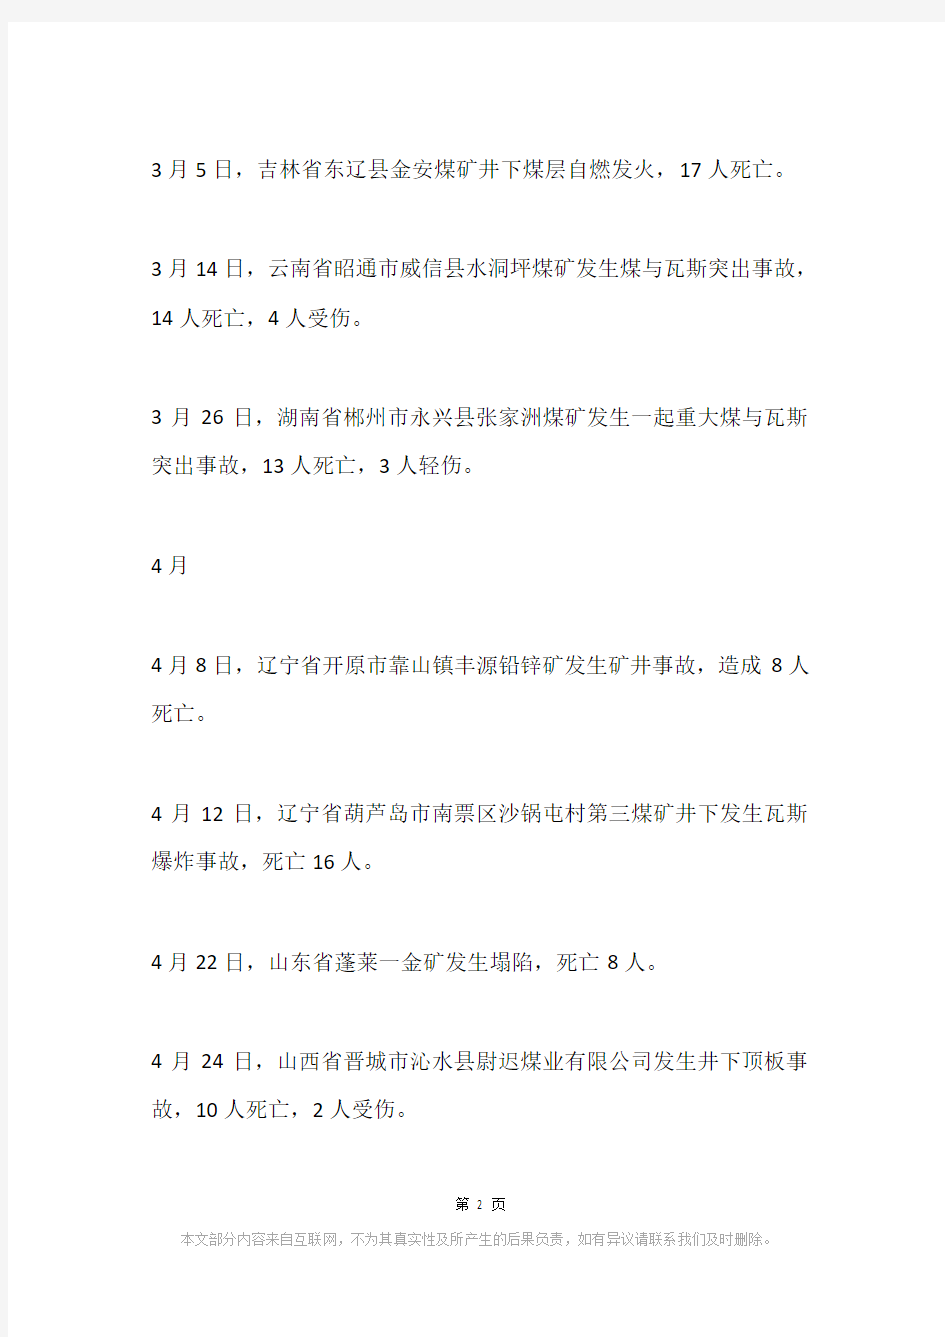 2008年中国矿难列表